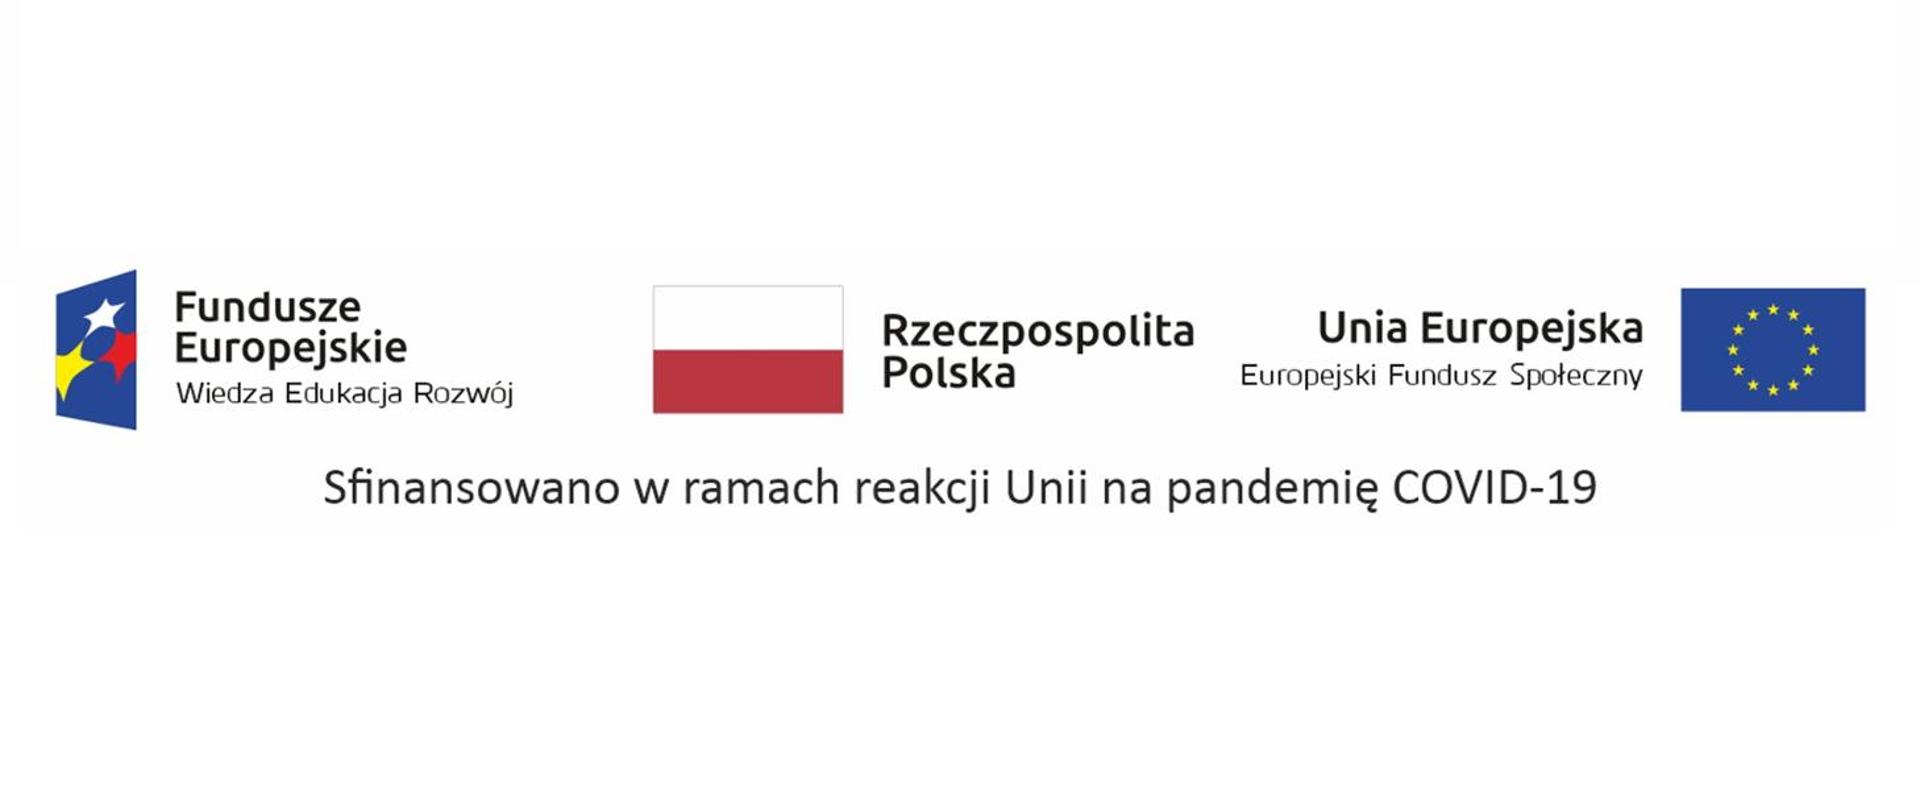 Zdjęcie przedstawia logo funduszy europejskich niebieska flaga z 3 gwiazdkami w kolorach białym, żółtym i czerwonym, flaga polski biało-czerwona i flaga unii europejskiej.